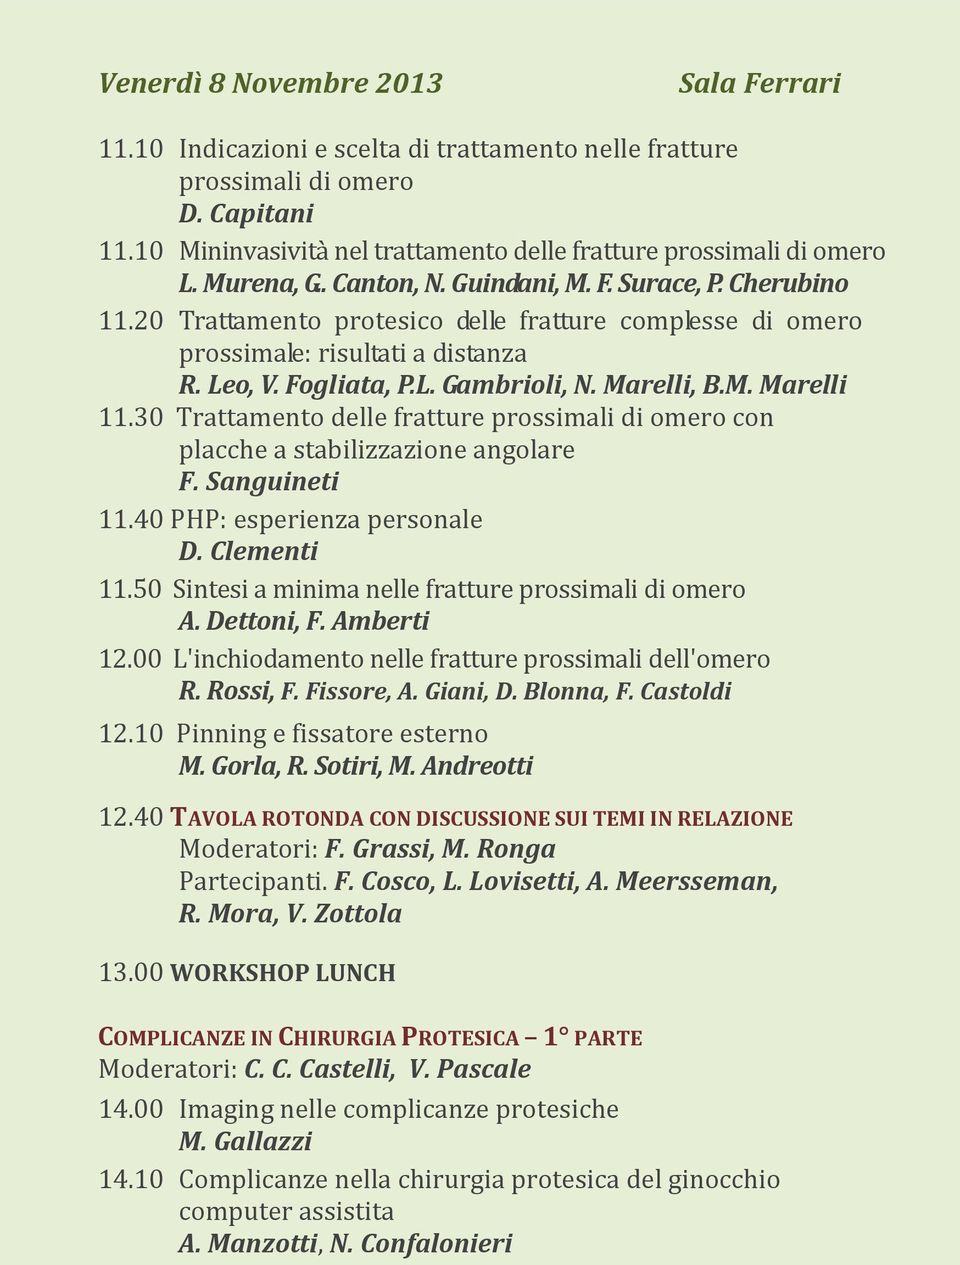 Marelli, B.M. Marelli 11.30 Trattamento delle fratture prossimali di omero con placche a stabilizzazione angolare F. Sanguineti 11.40 PHP: esperienza personale D. Clementi 11.